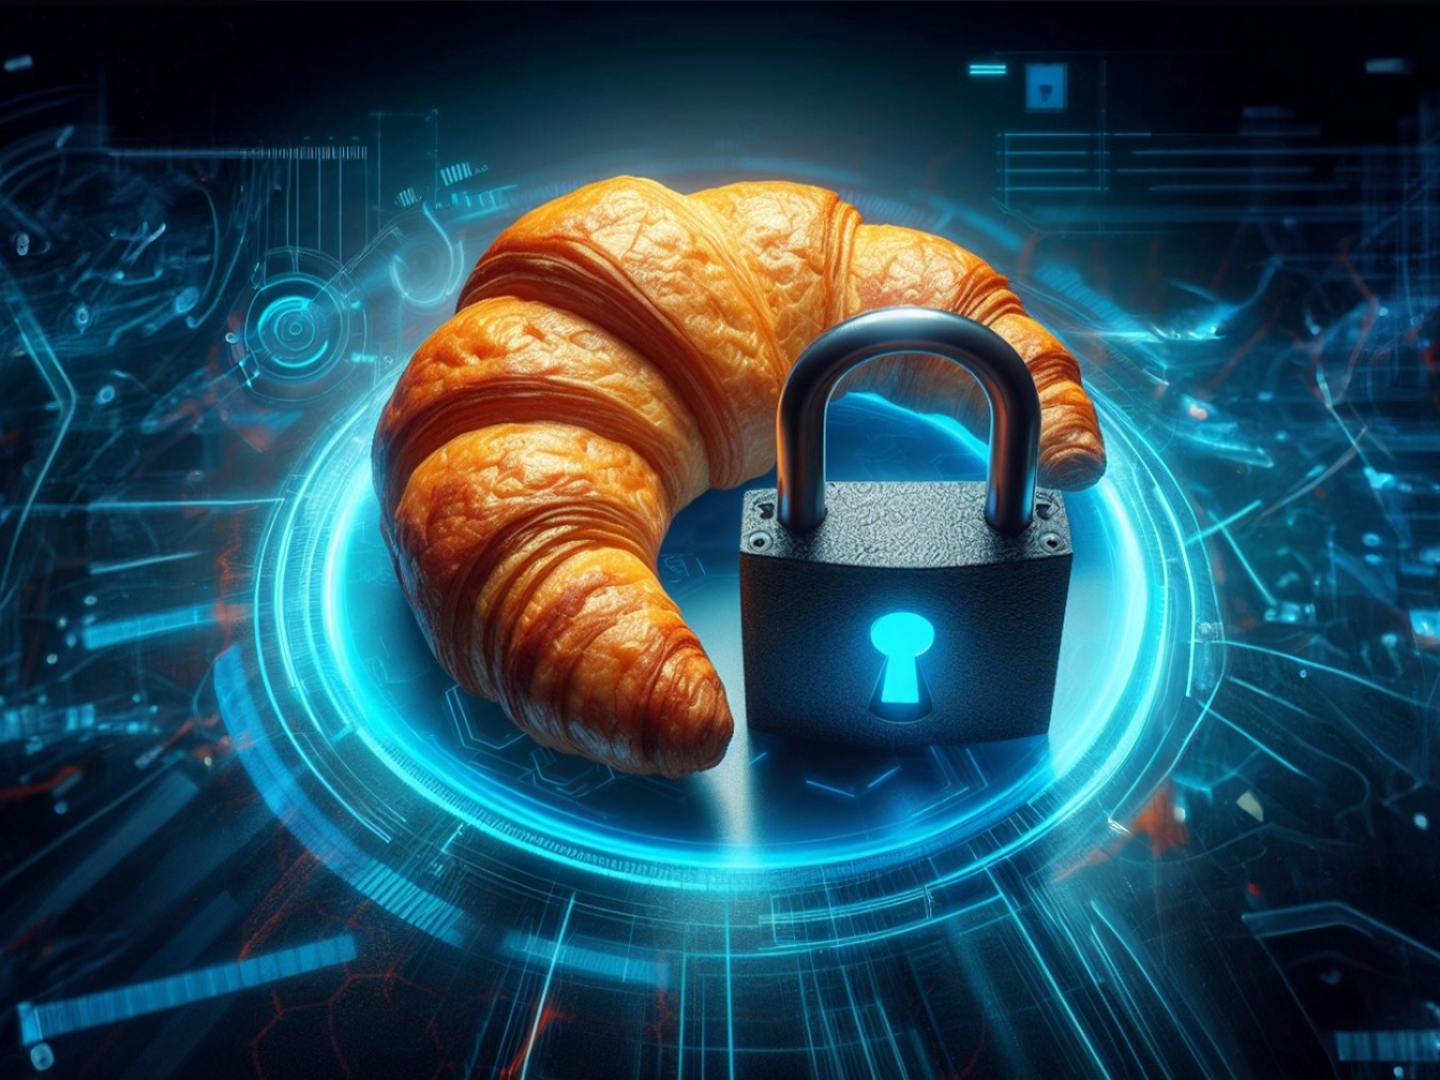 Ein Croissant und ein digitales Schloss auf einem Hintergrund im Cyber-Style